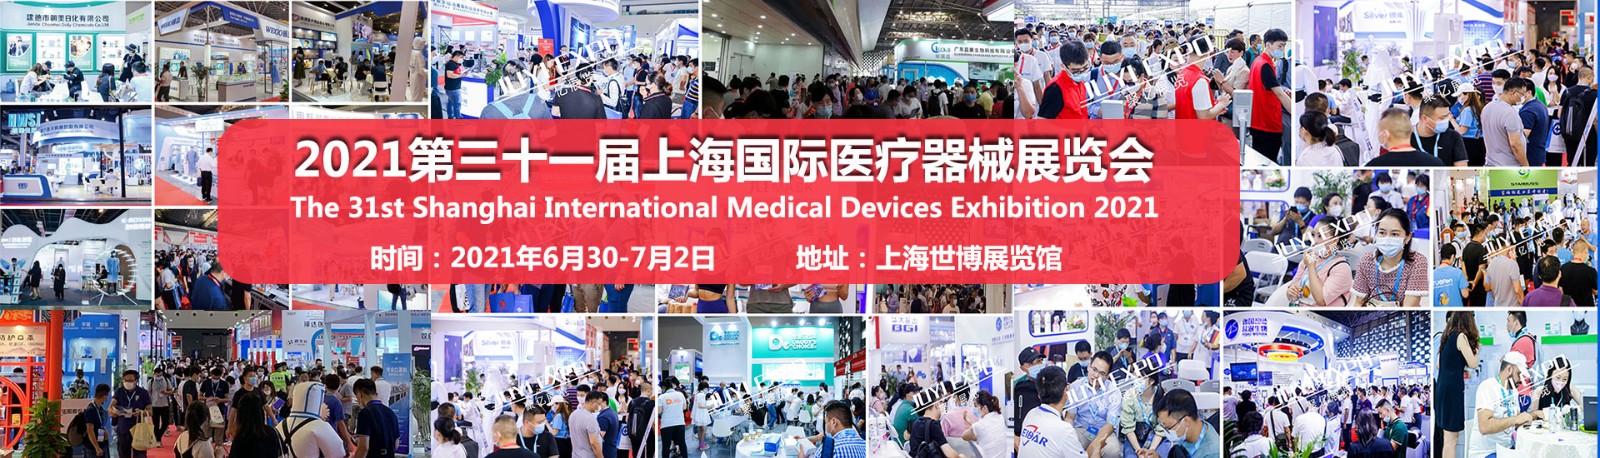 2021中国国际医疗器械展览会-上海医疗器械展览会